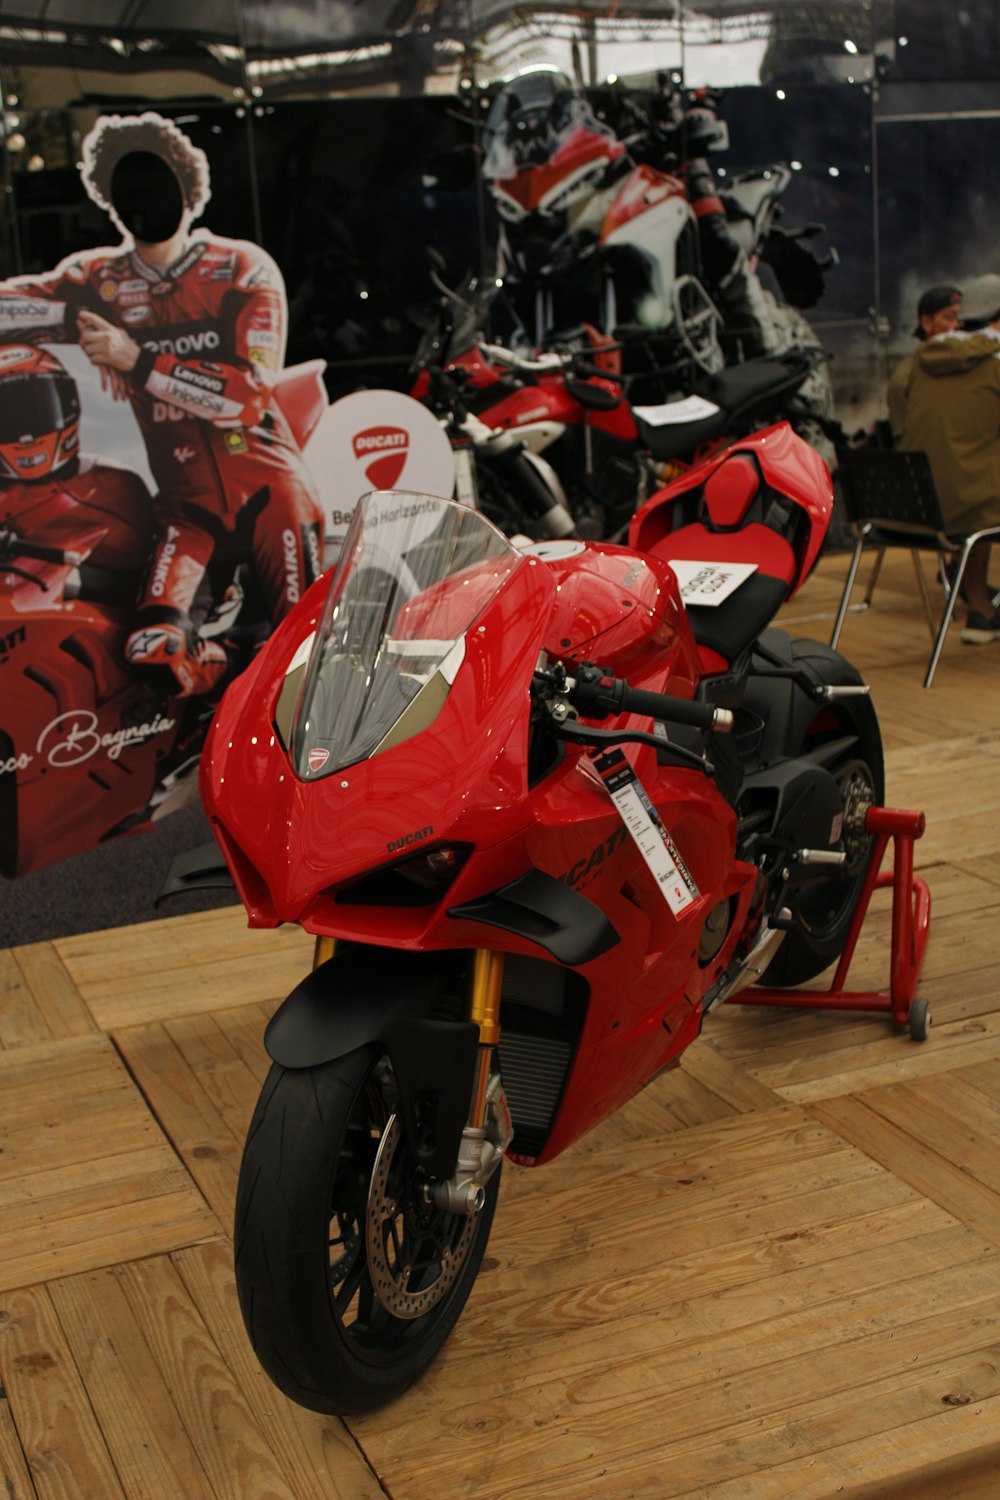 Una motocicleta roja estacionada encima de un piso de madera dura